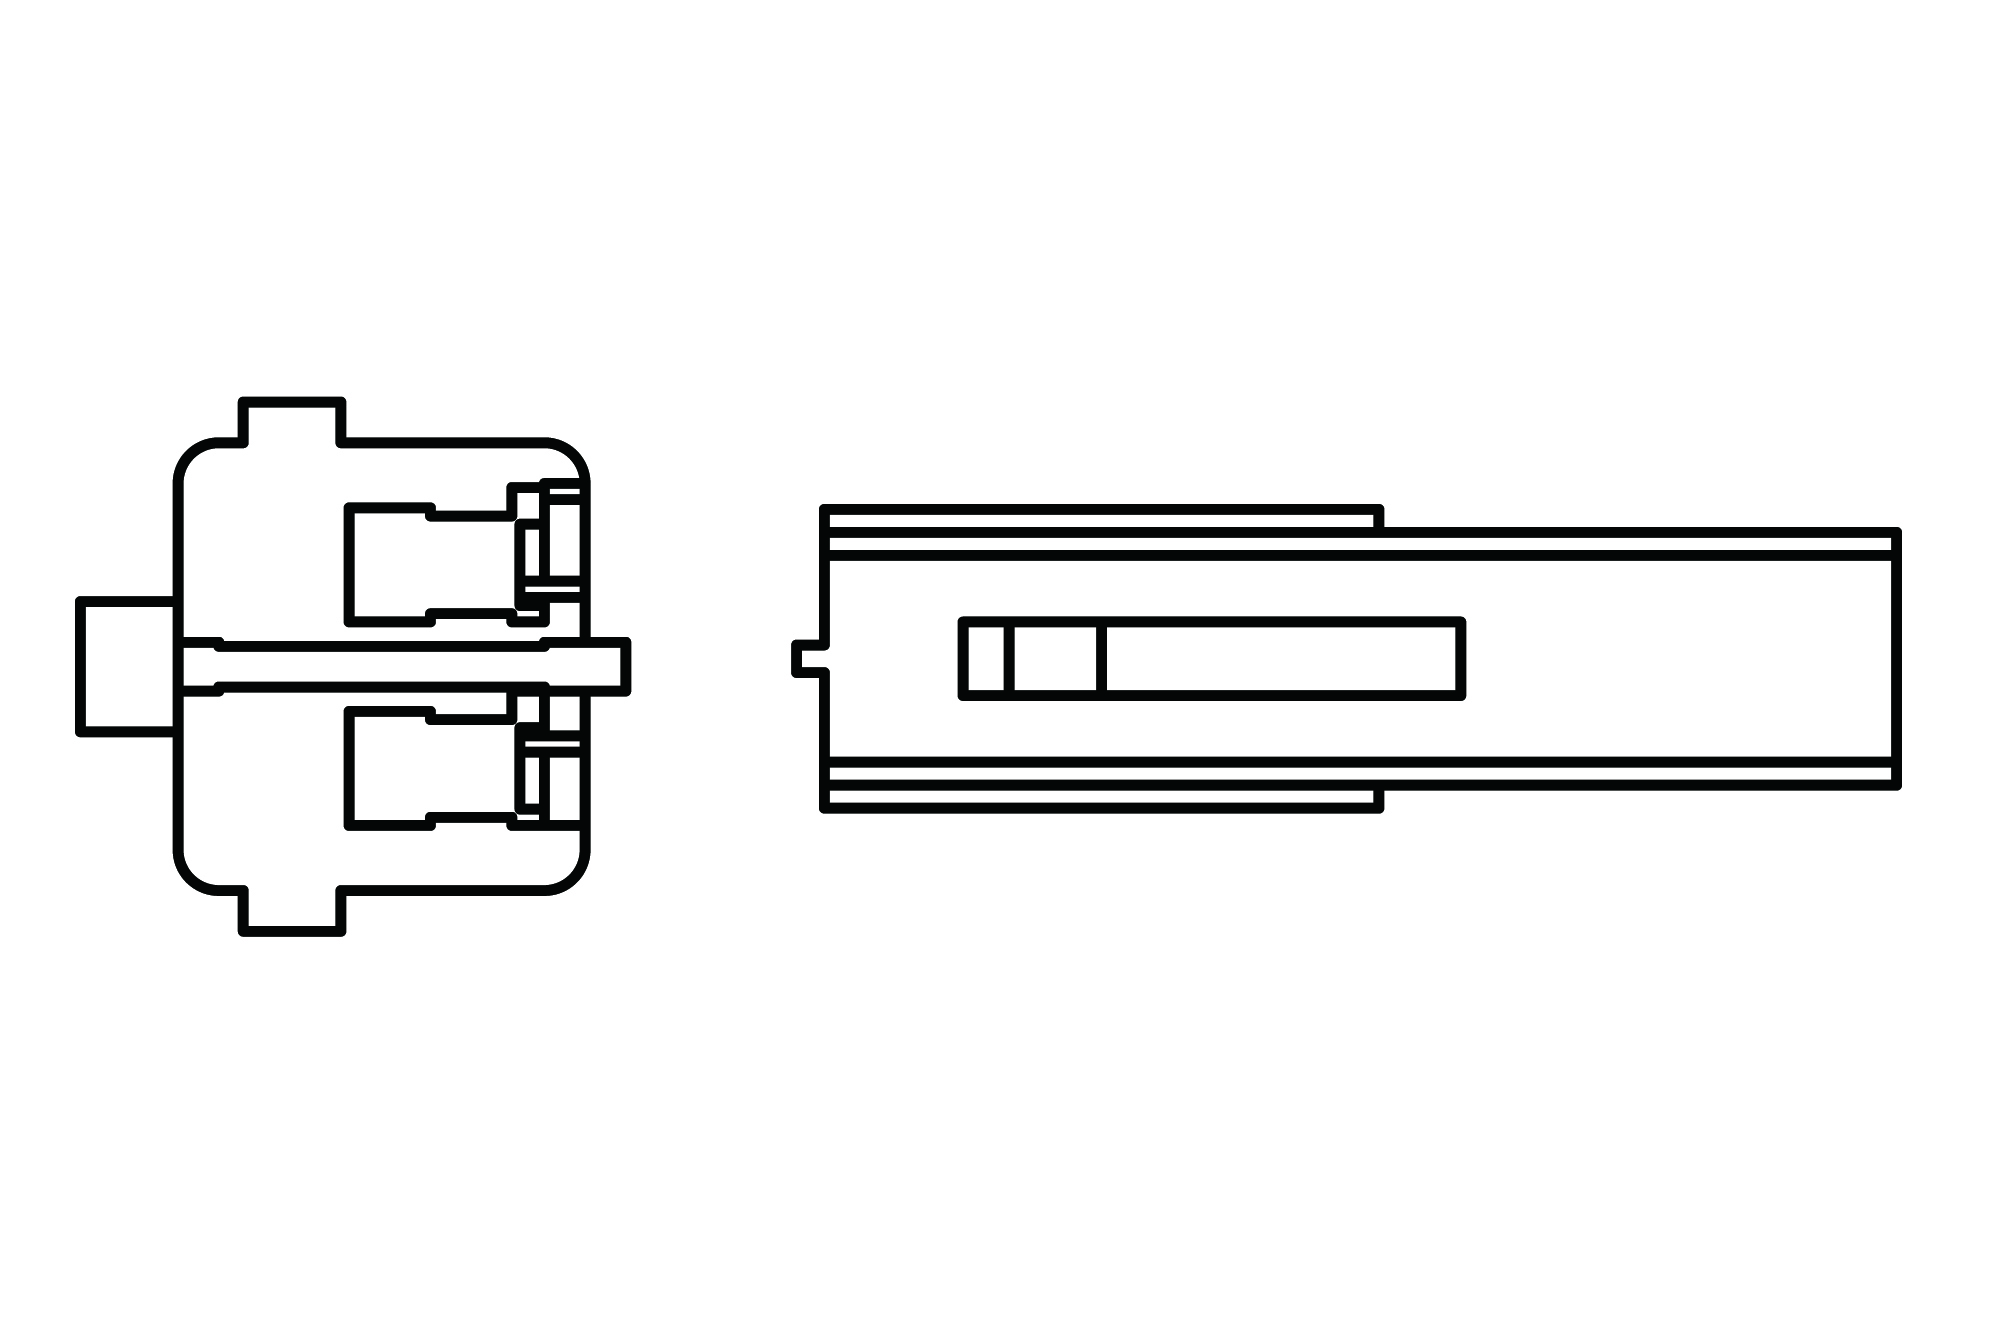 Passt an diverse Honda Modelle ab Bj. 04, siehe Bild, 2 Kabel mit Rundsteckhülsen.